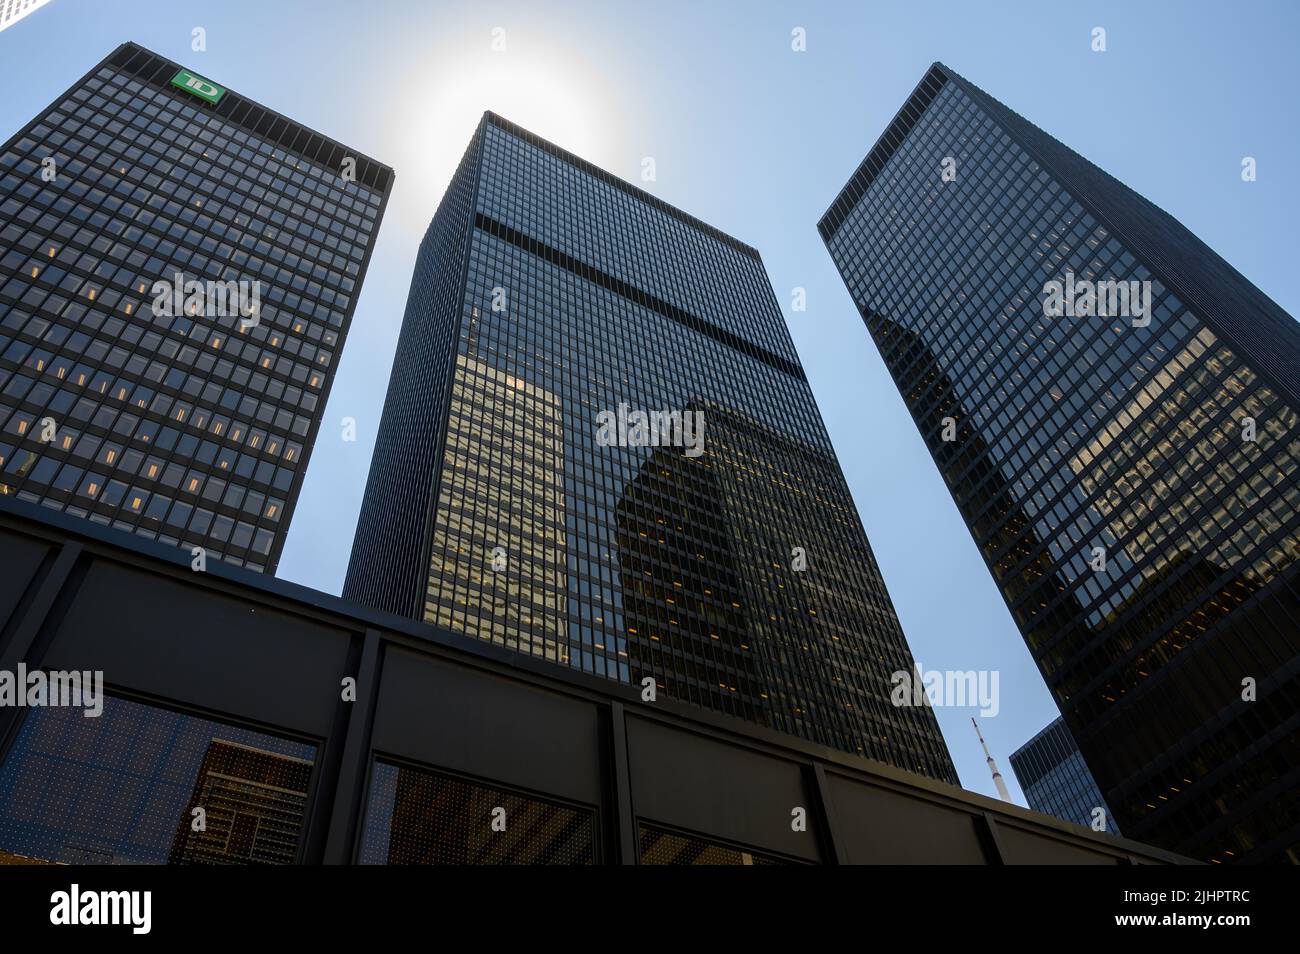 Vue sur les édifices Toronto Dominion (TD) avec des gratte-ciels voisins reflétés dans les façades en verre du quartier financier de Toronto, Canada. Banque D'Images